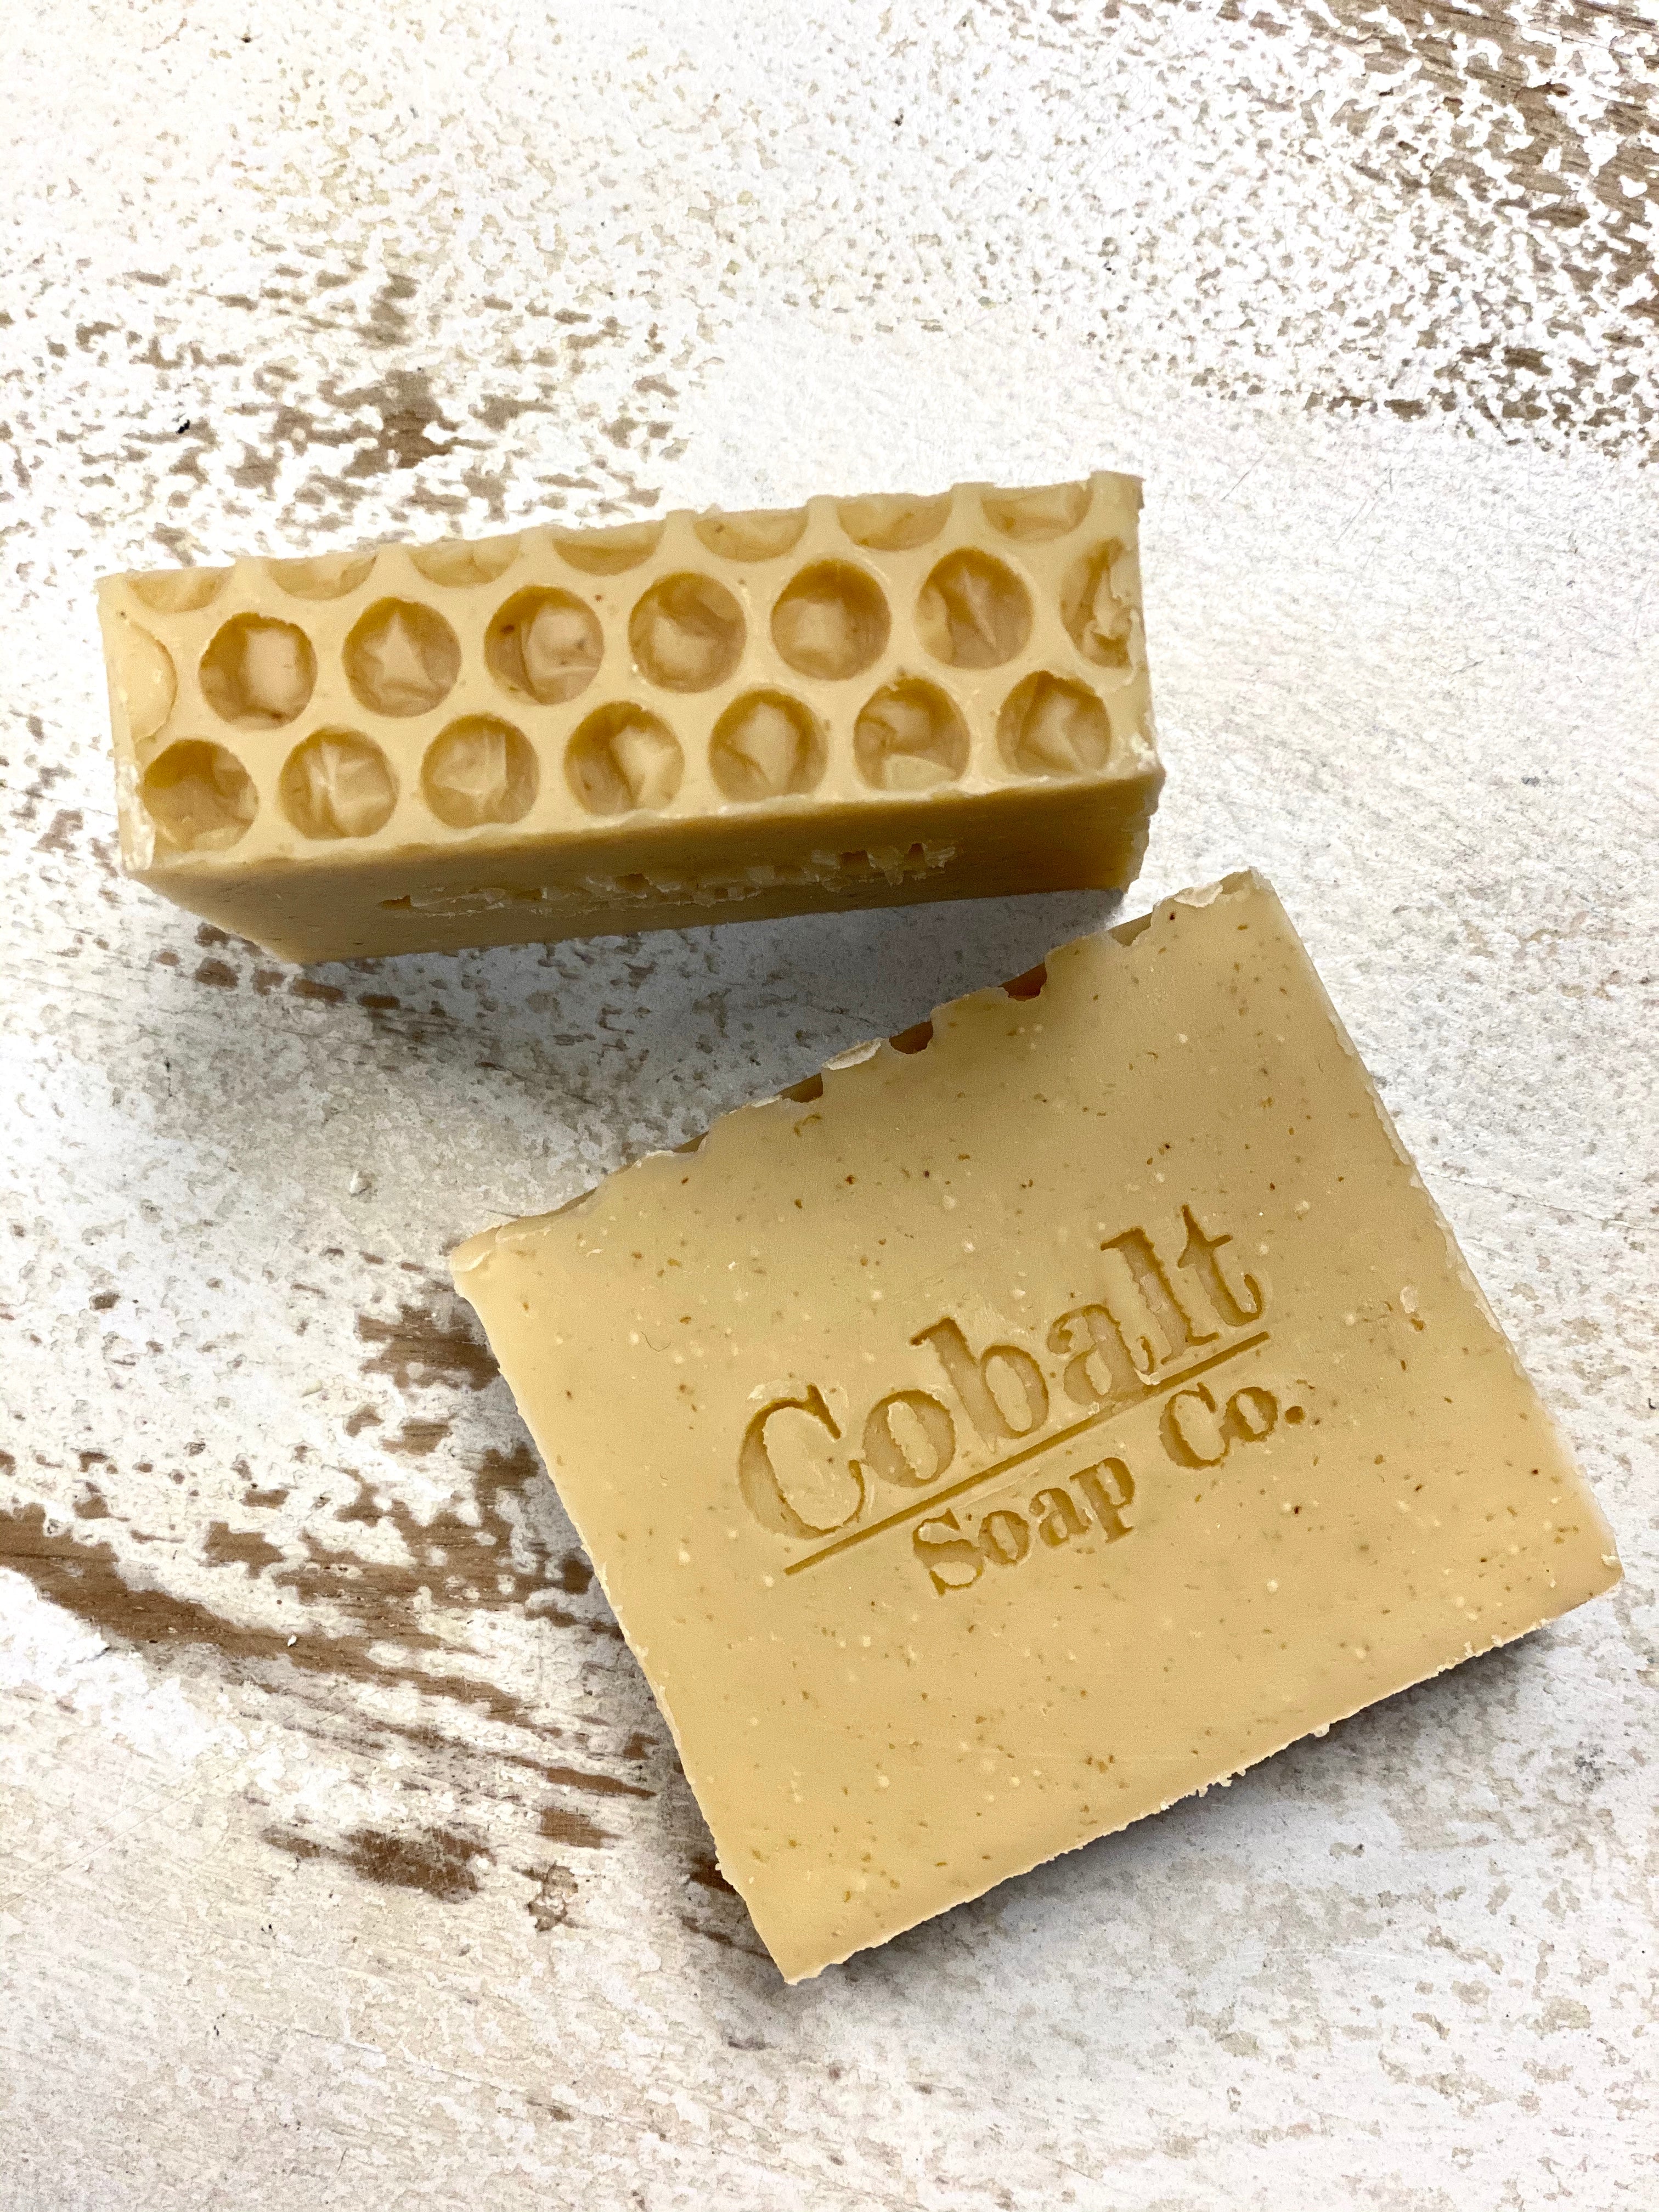 Cobalt Soap no. 3 - Oatmeal, Milk, & Honey